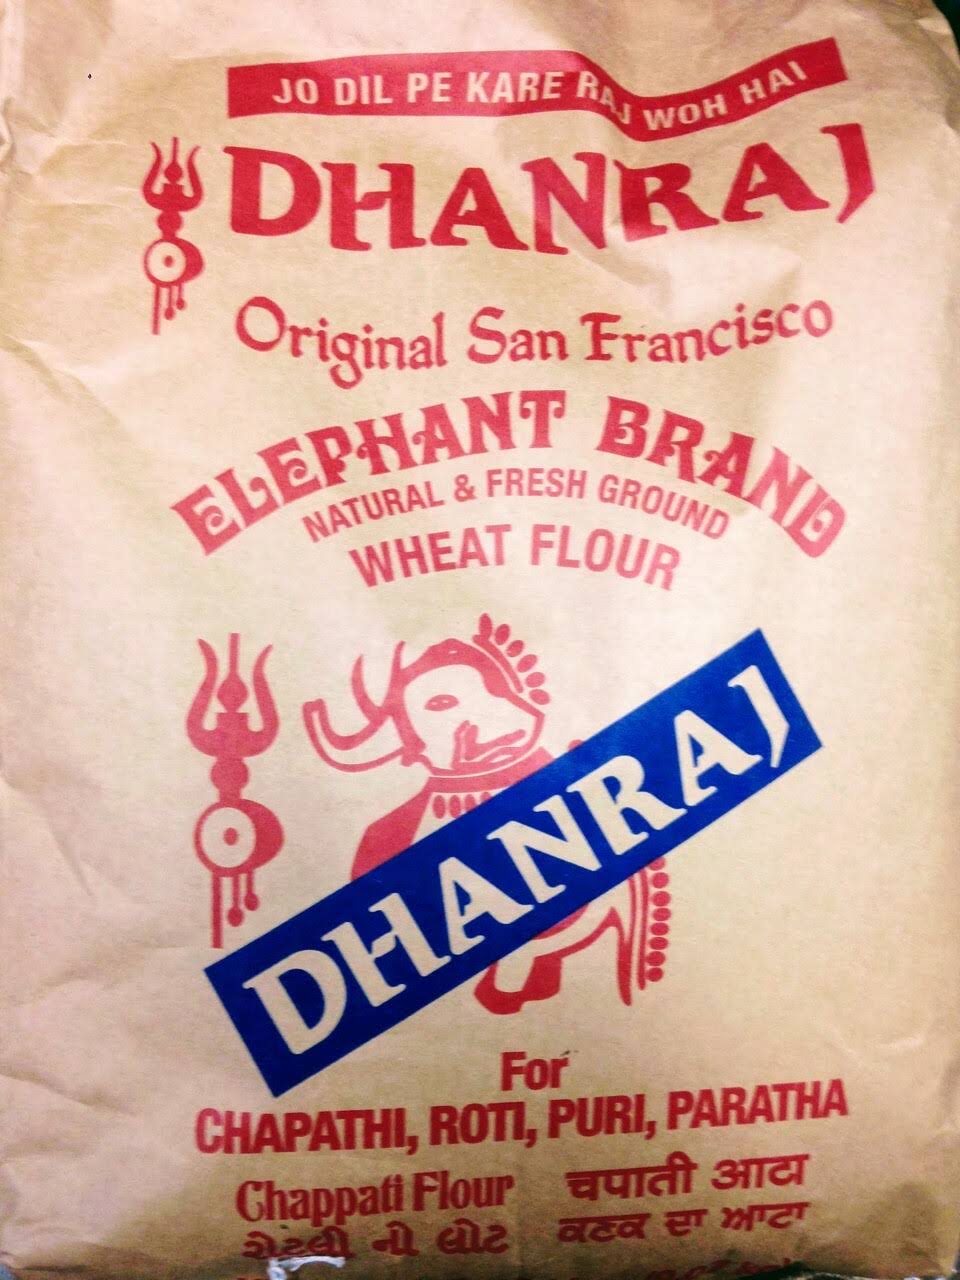 Dhanraj Elephant Brand Wheat Flour 20lb